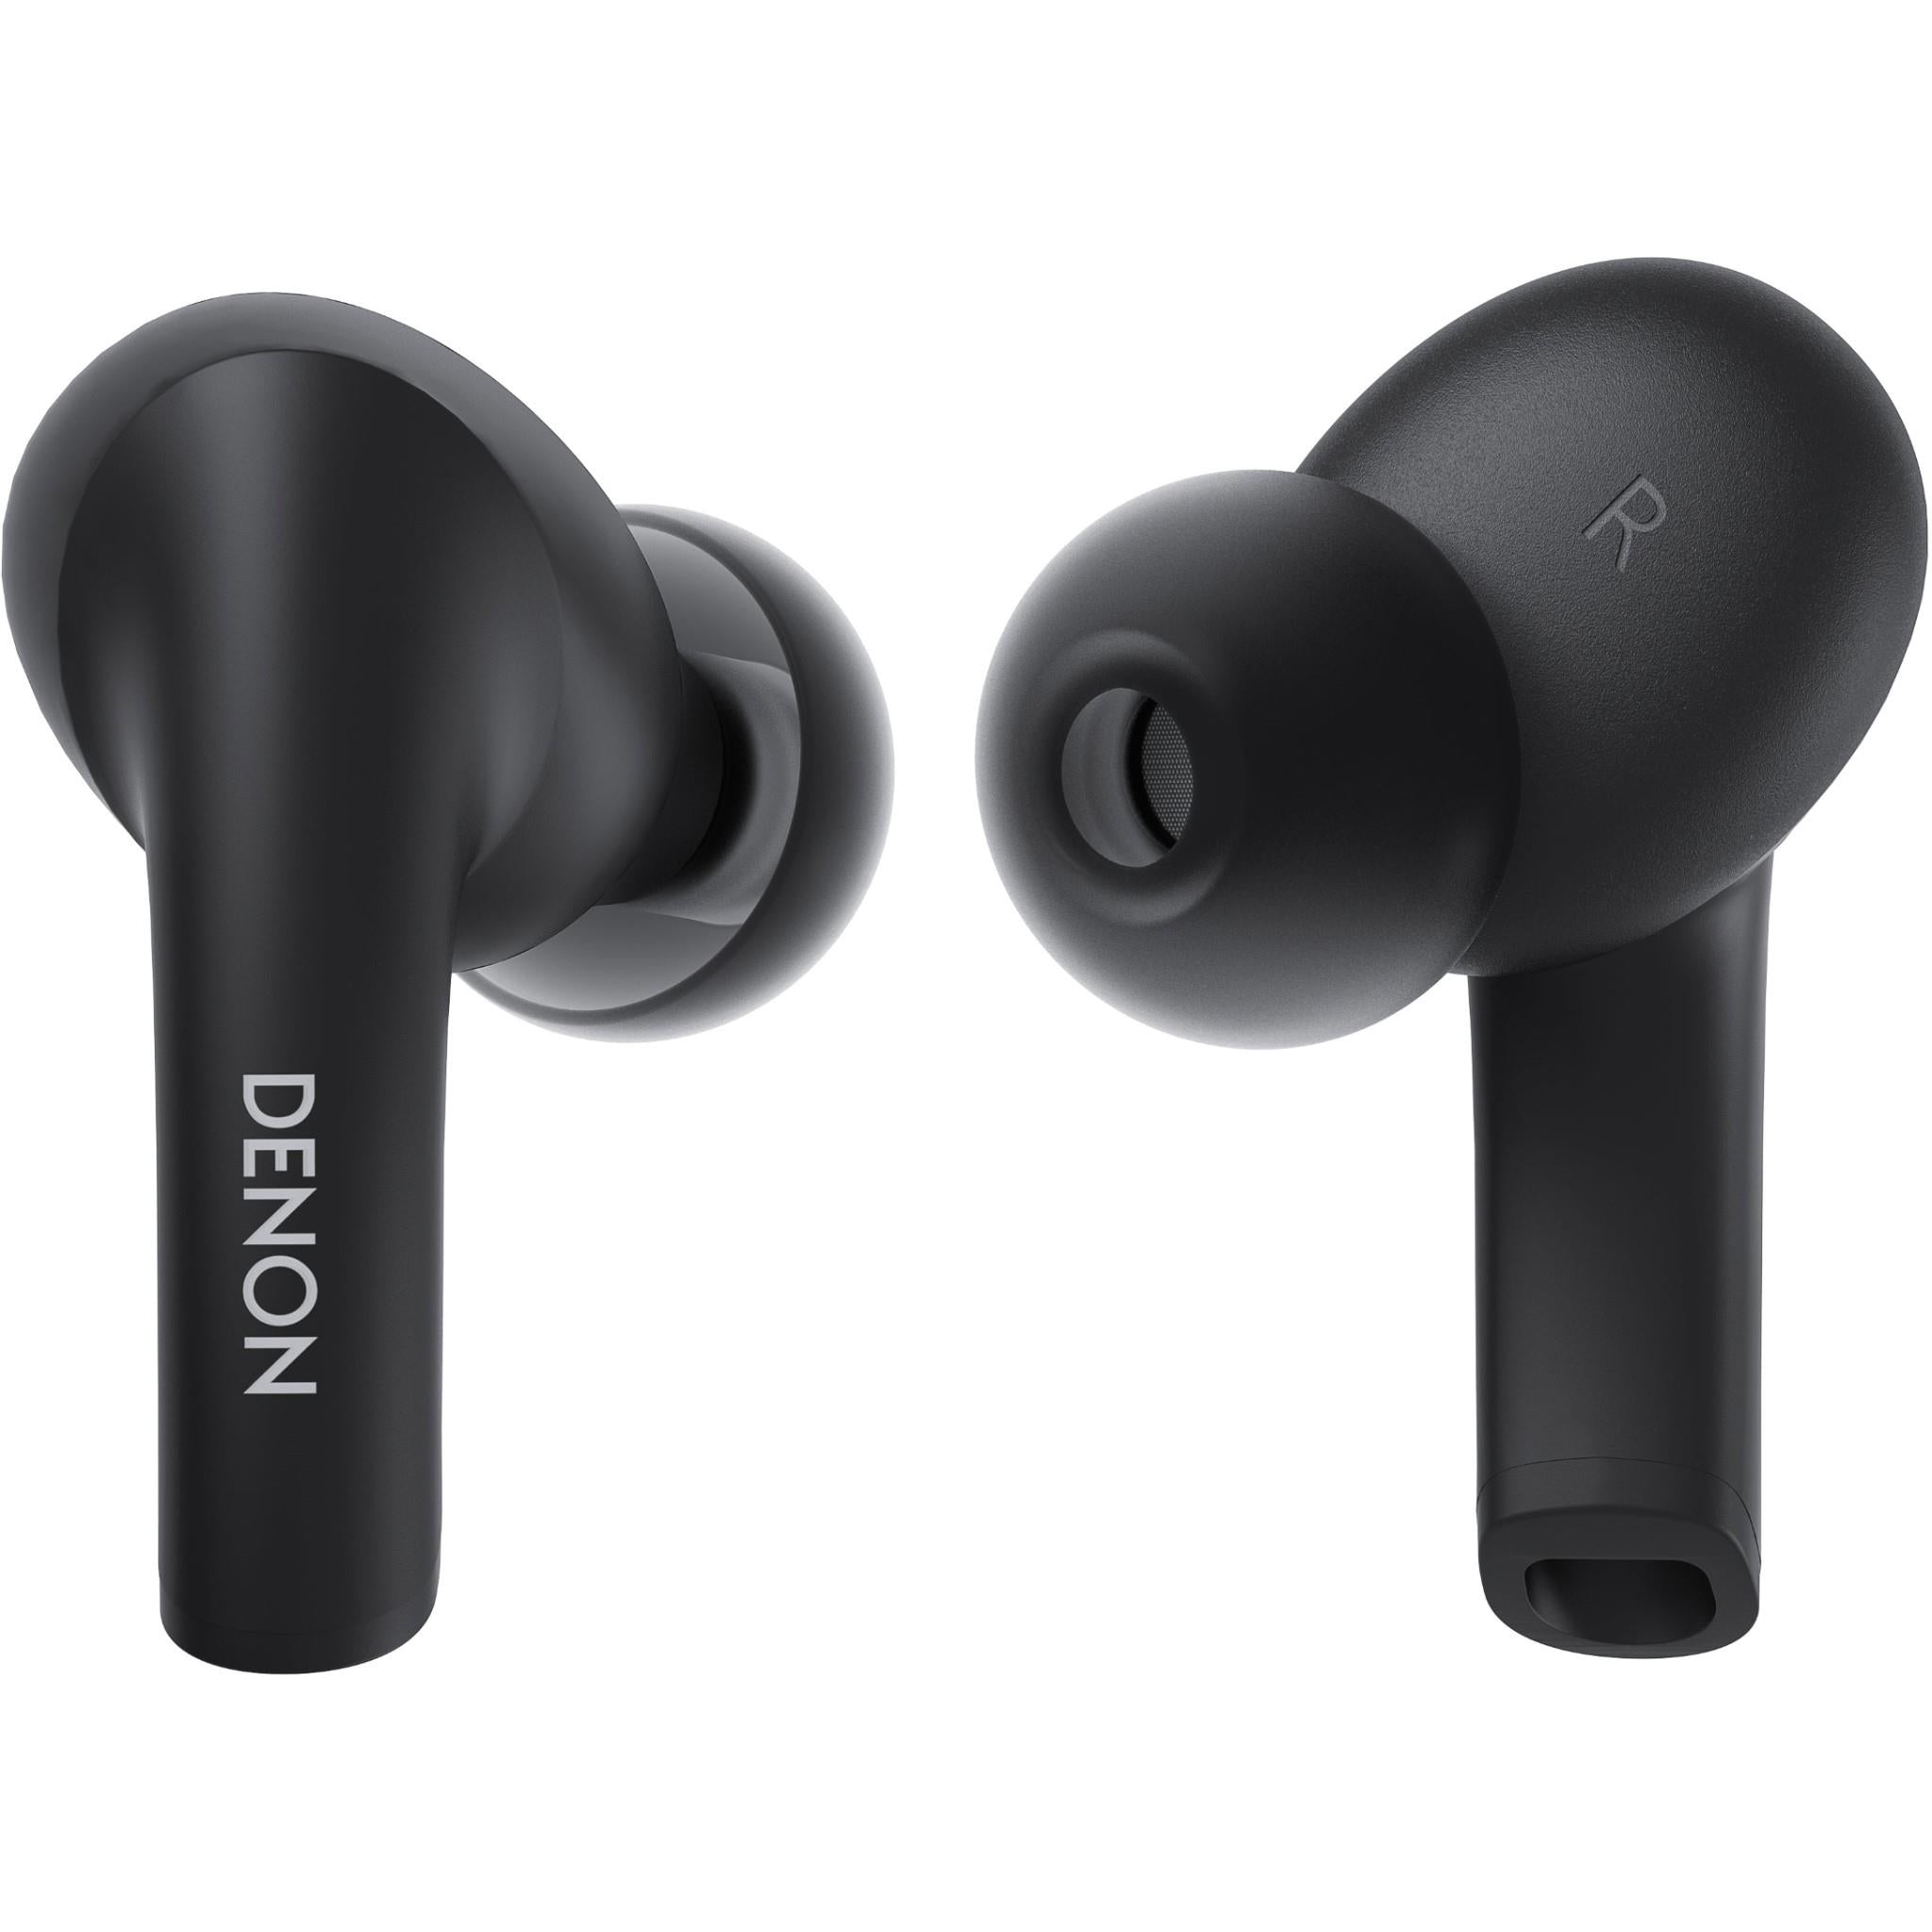 denon ahc630w true wireless in-ear headphones (black)